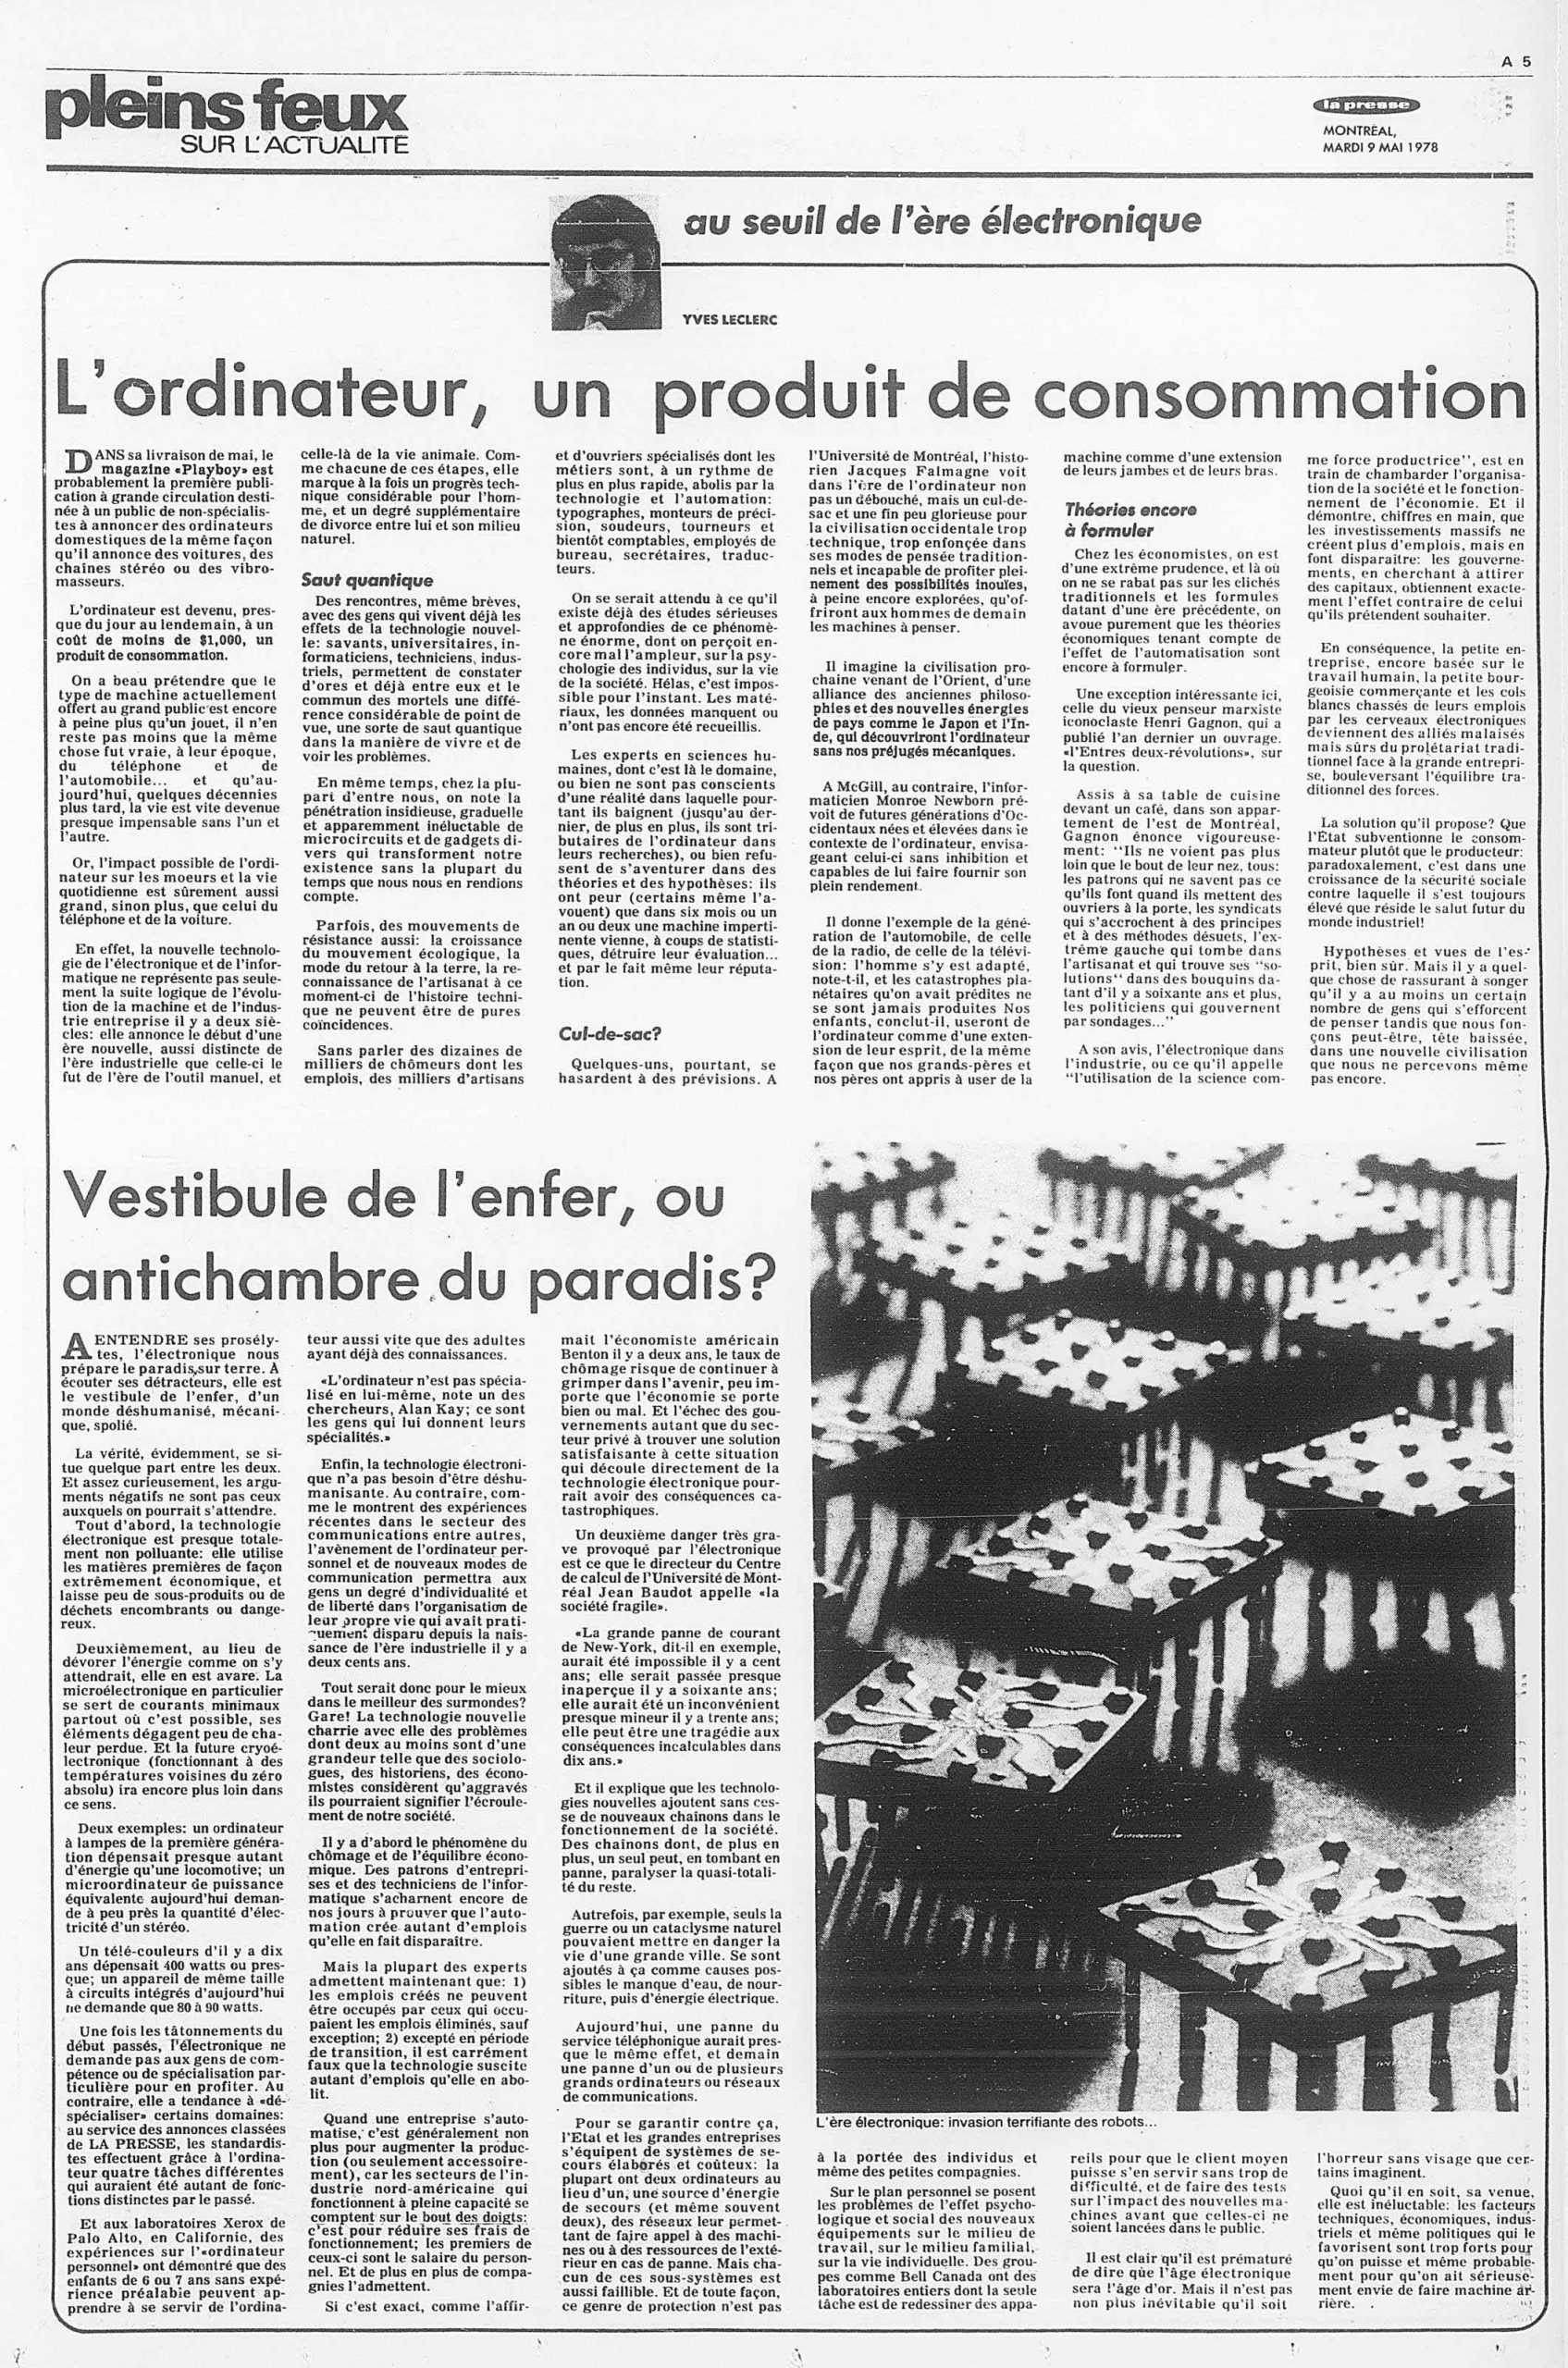 La Presse. 9 mai 1978 [Article de journal]
